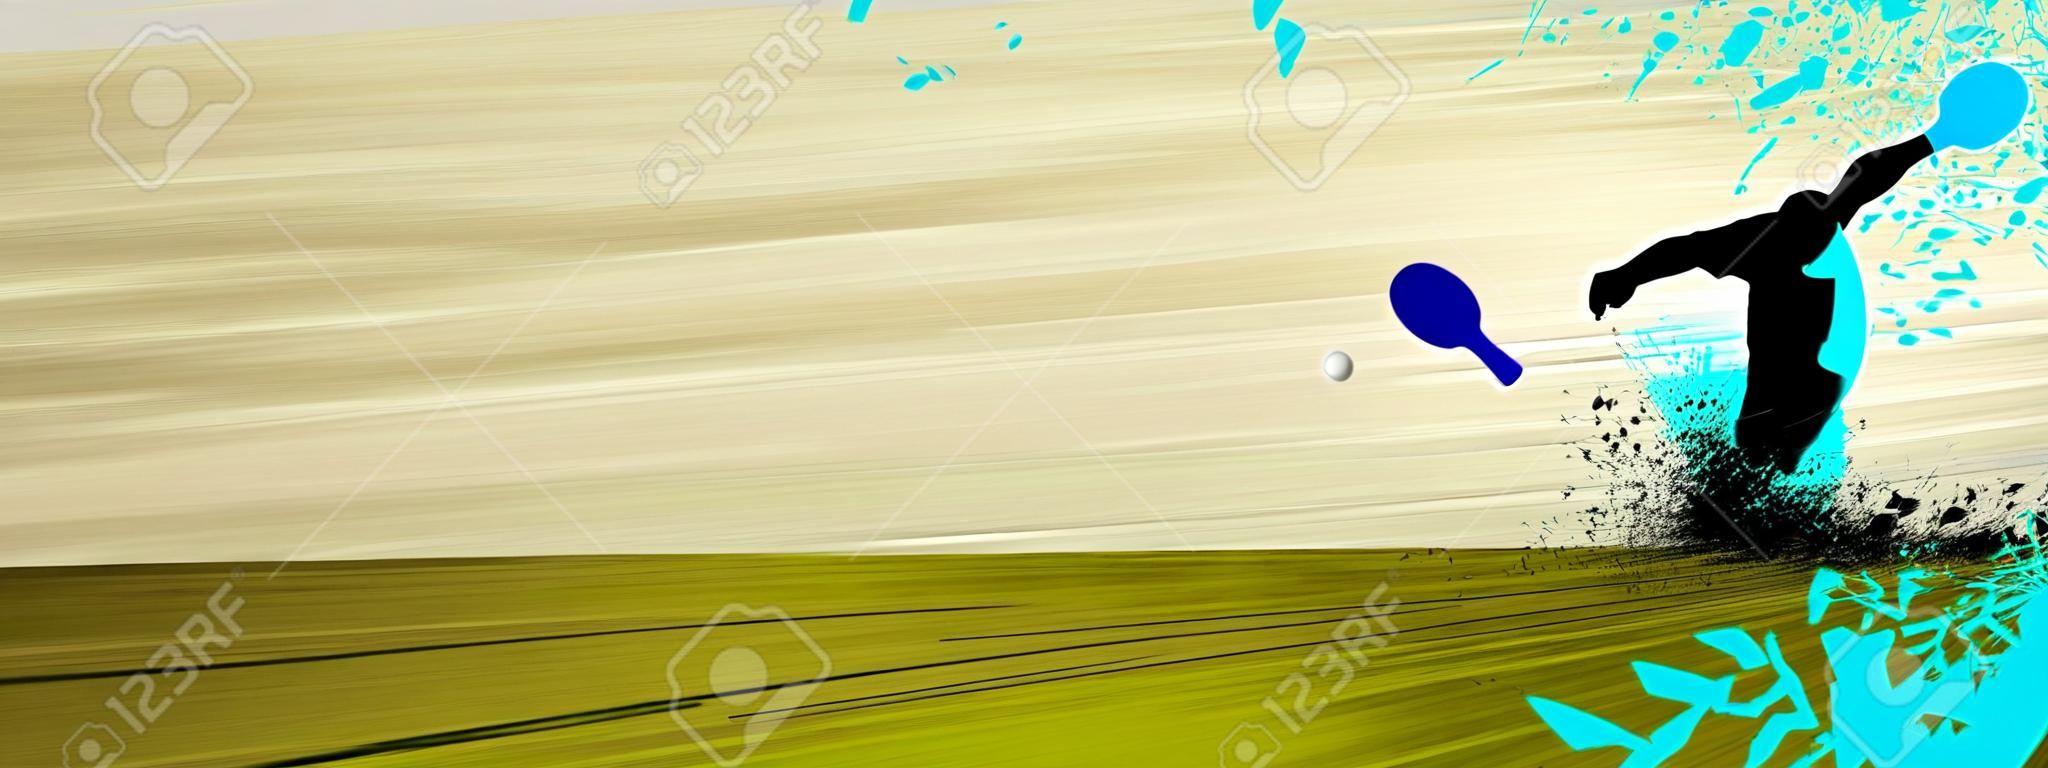 Cartel Sport: raqueta de tenis de mesa, la bola y el hombre con el espacio de fondo